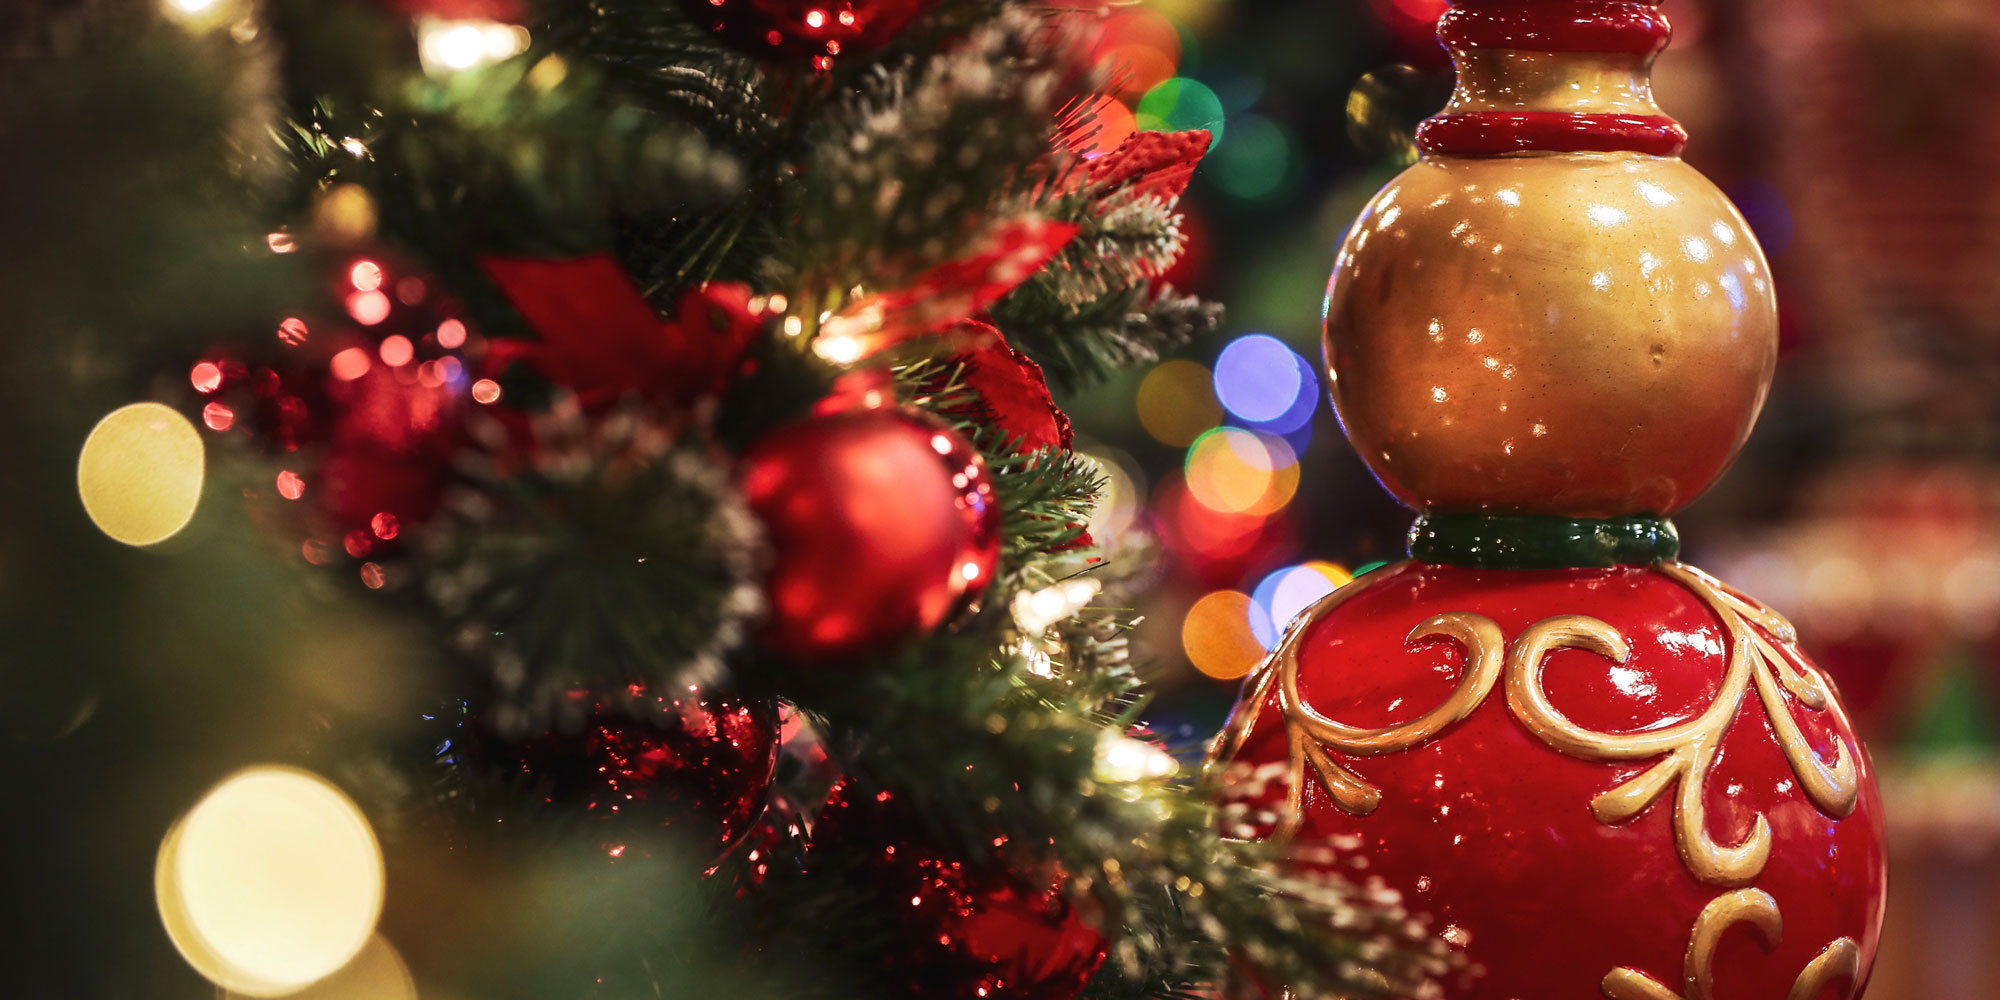 Custodia albero di Natale - Arredamento e Casalinghi In vendita a